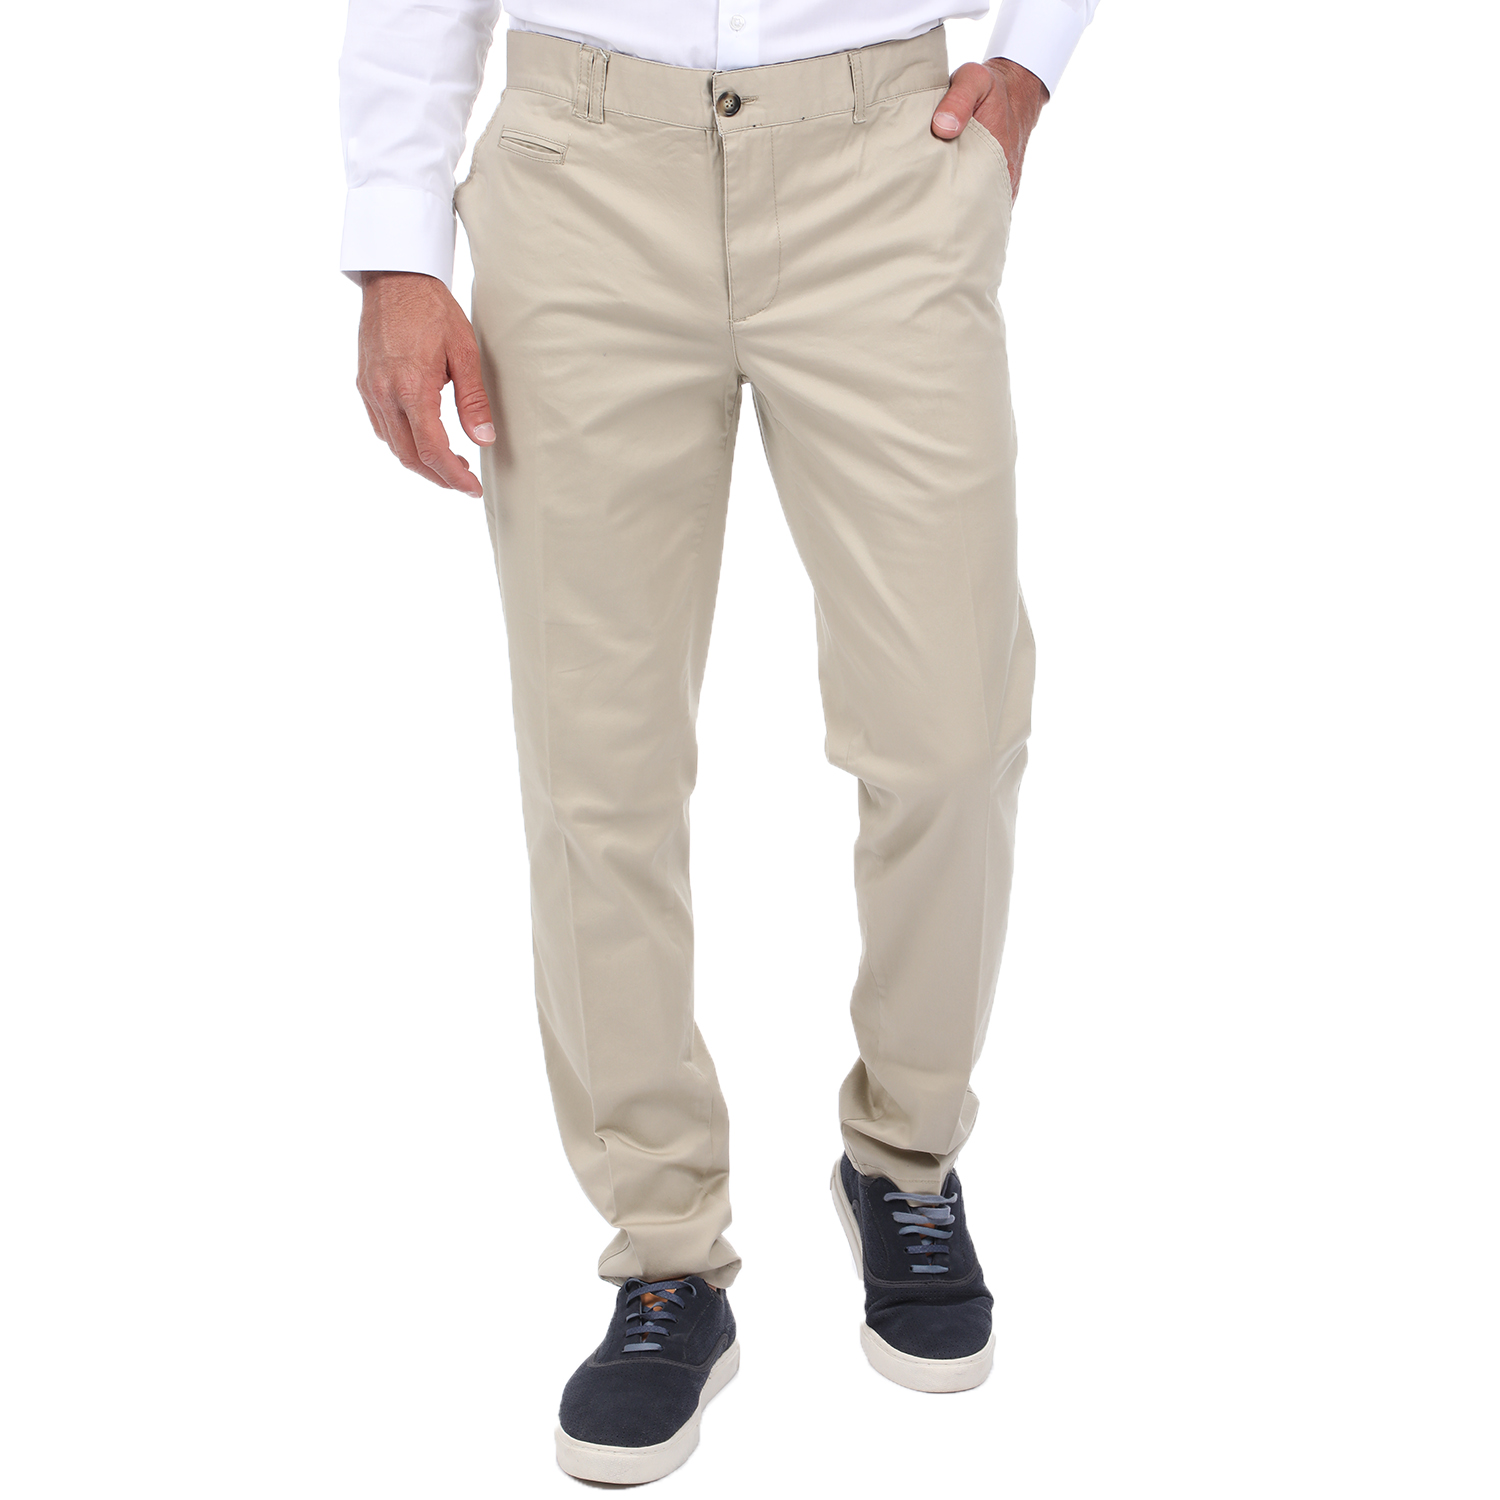 Ανδρικά/Ρούχα/Παντελόνια/Chinos MARTIN & CO - Ανδρικό chino παντελόνι MARTIN & CO SLIM μπεζ